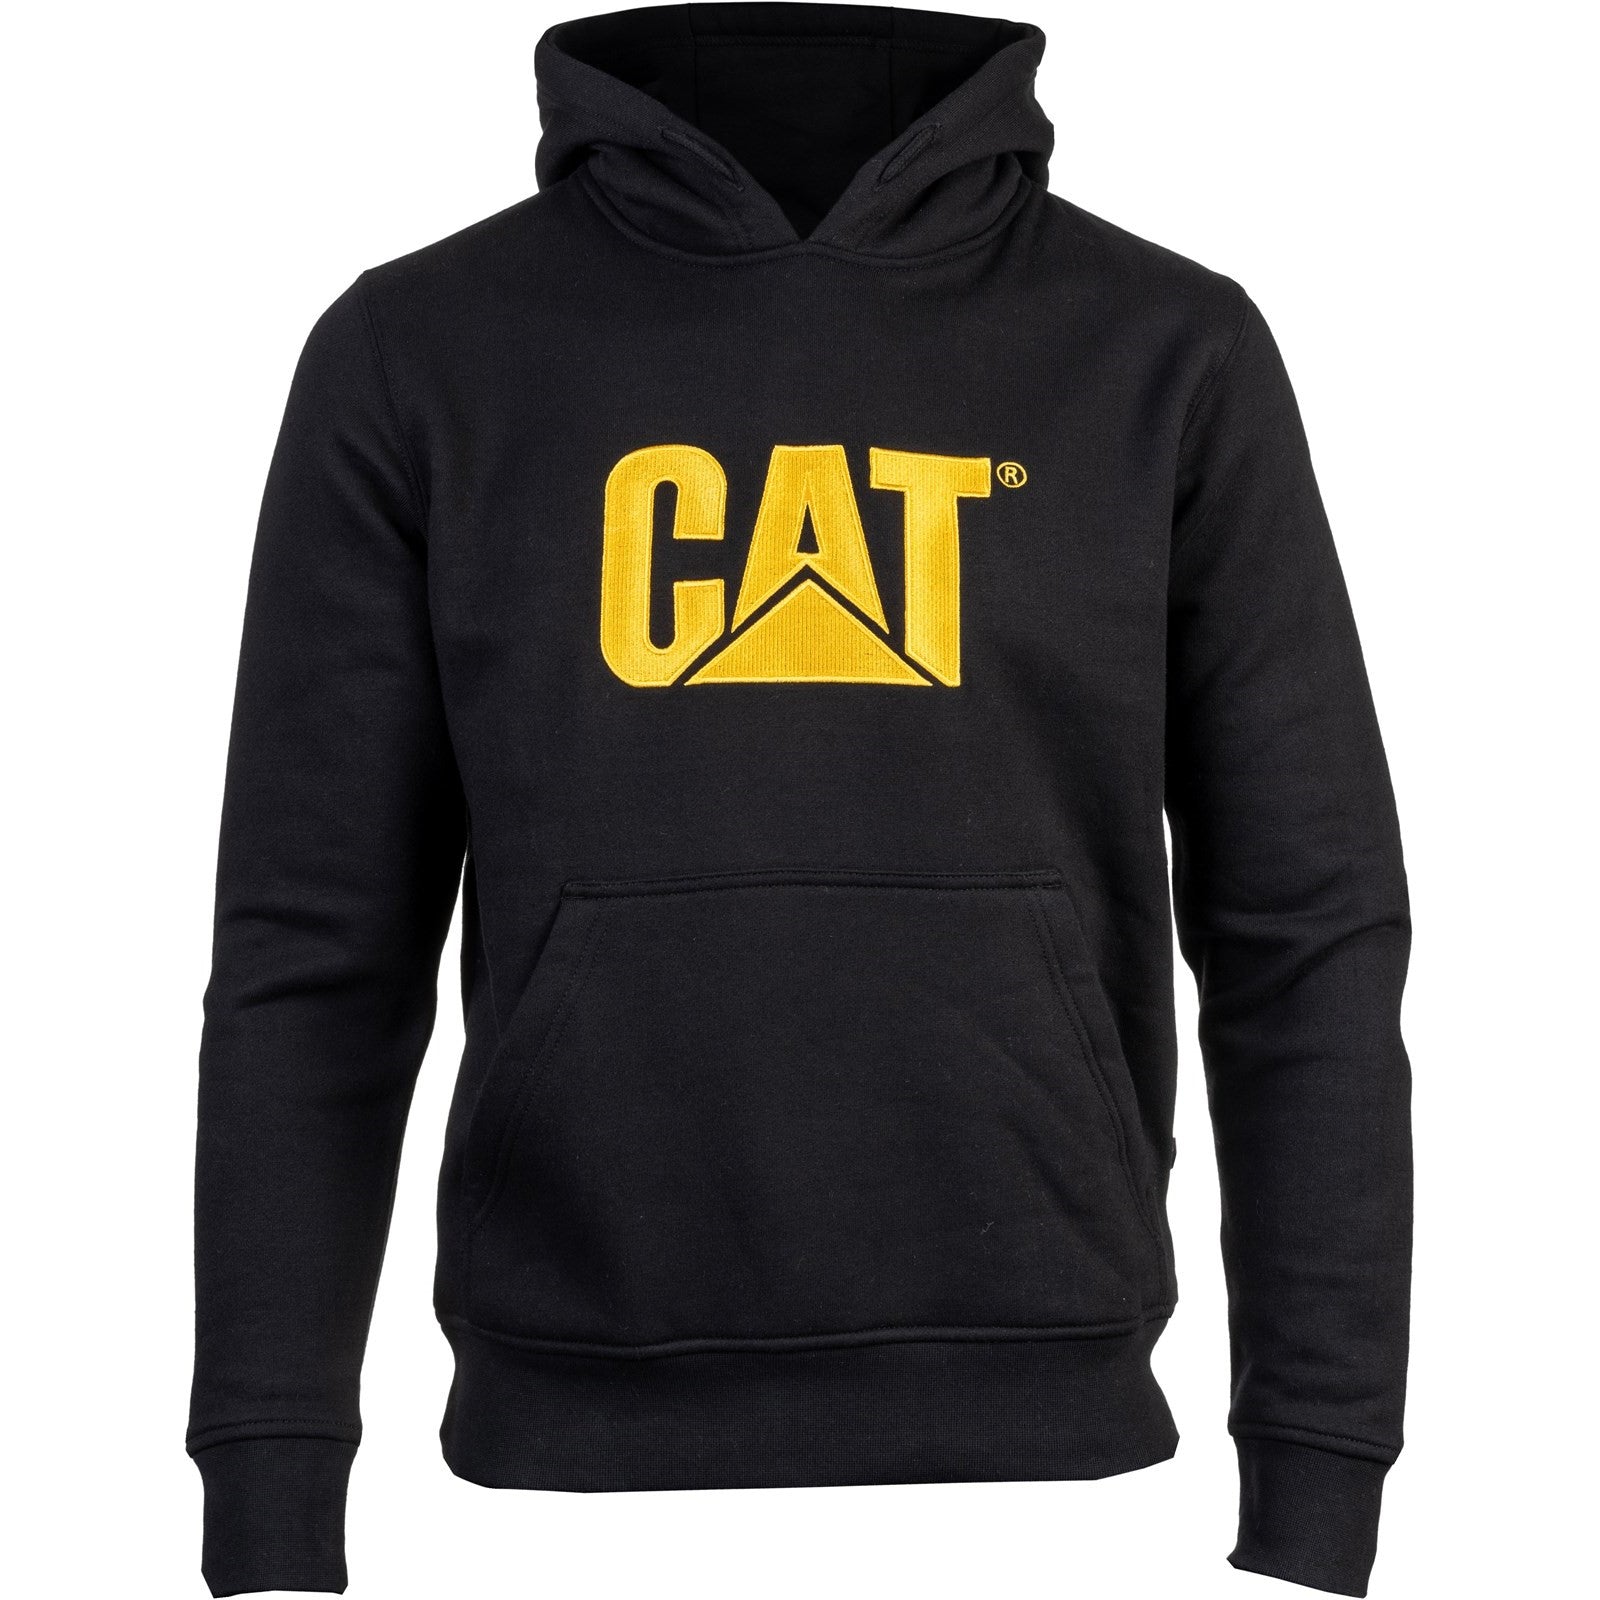 Caterpillar Trademark Hooded Sweatshirt in Black